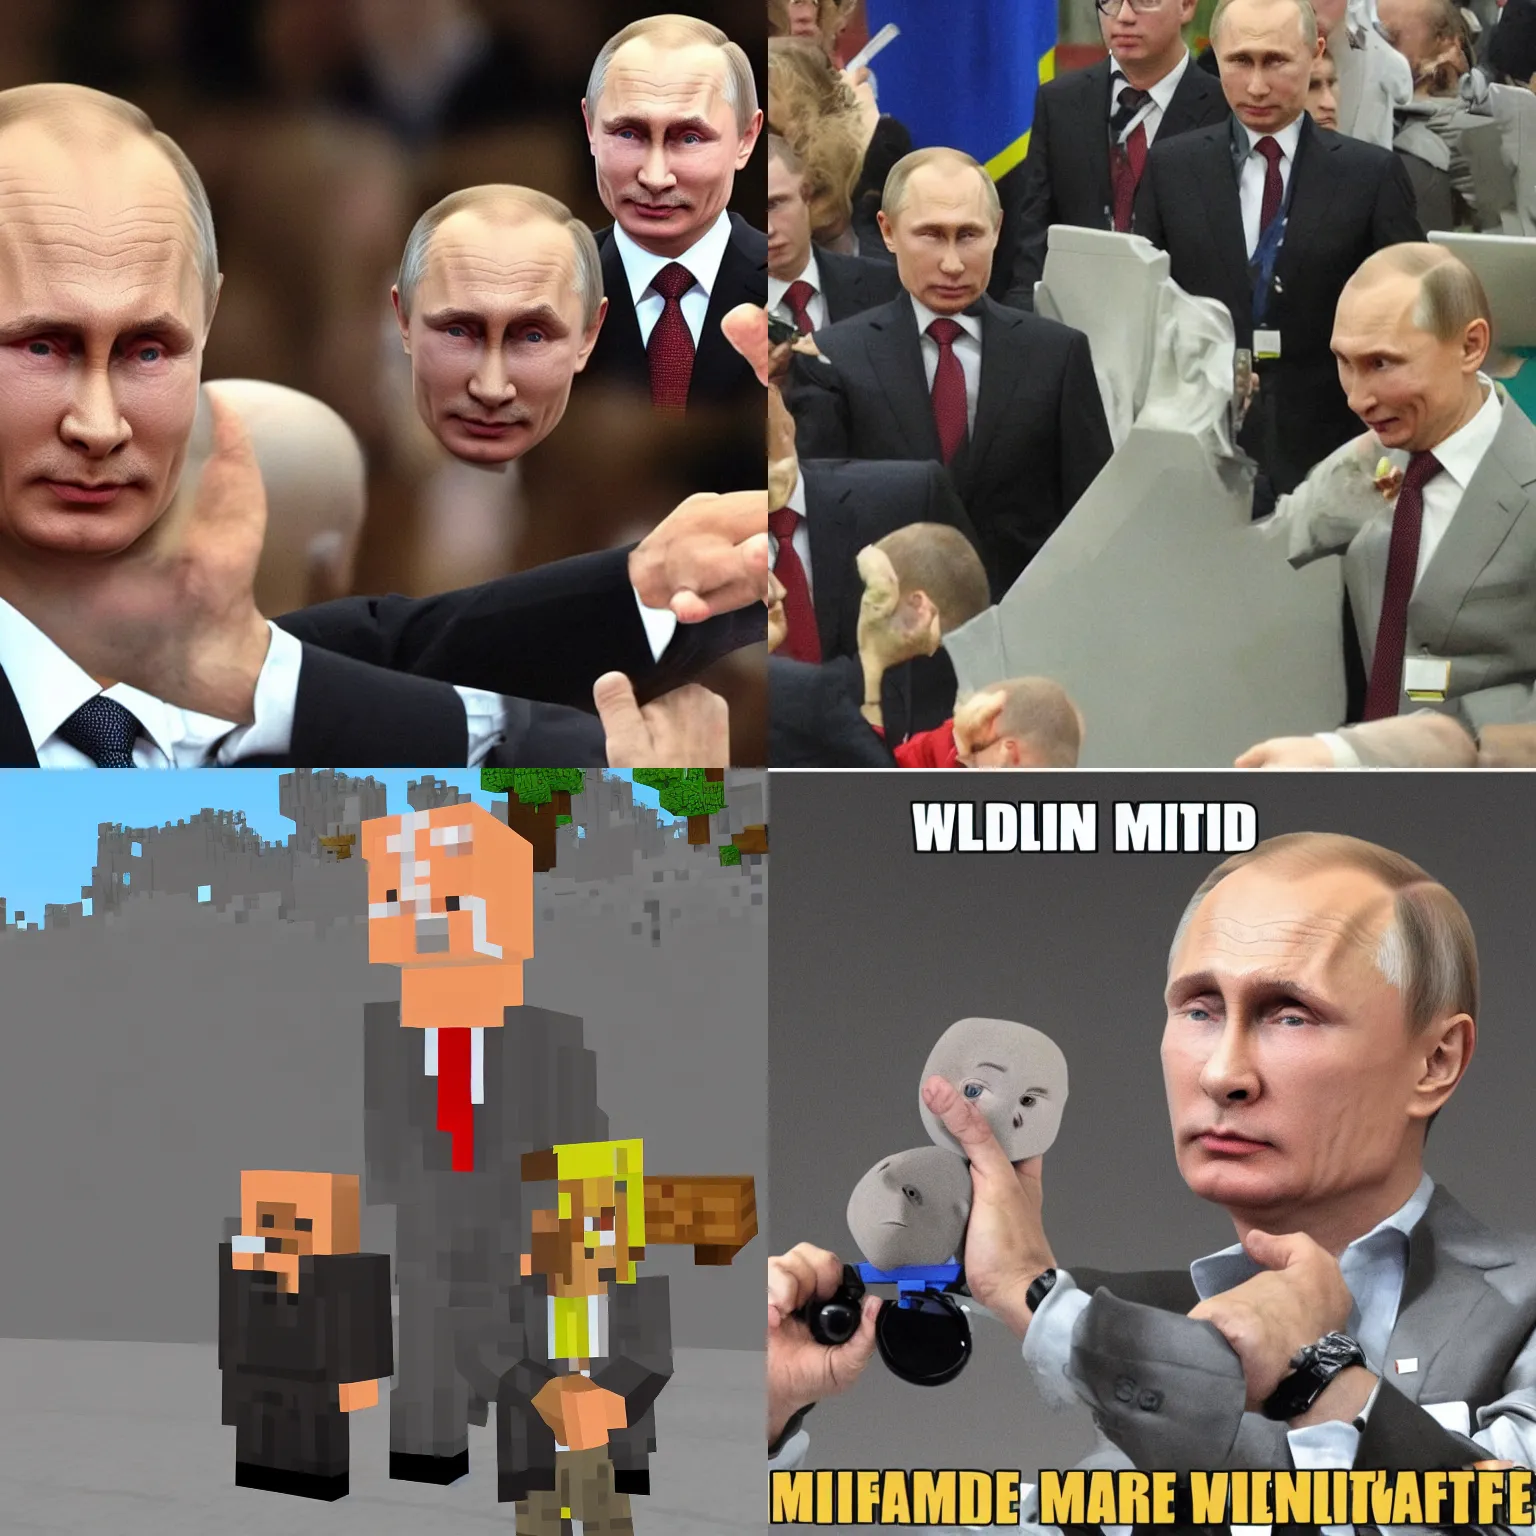 Prompt: Vladimir Putin minecraft sqare head